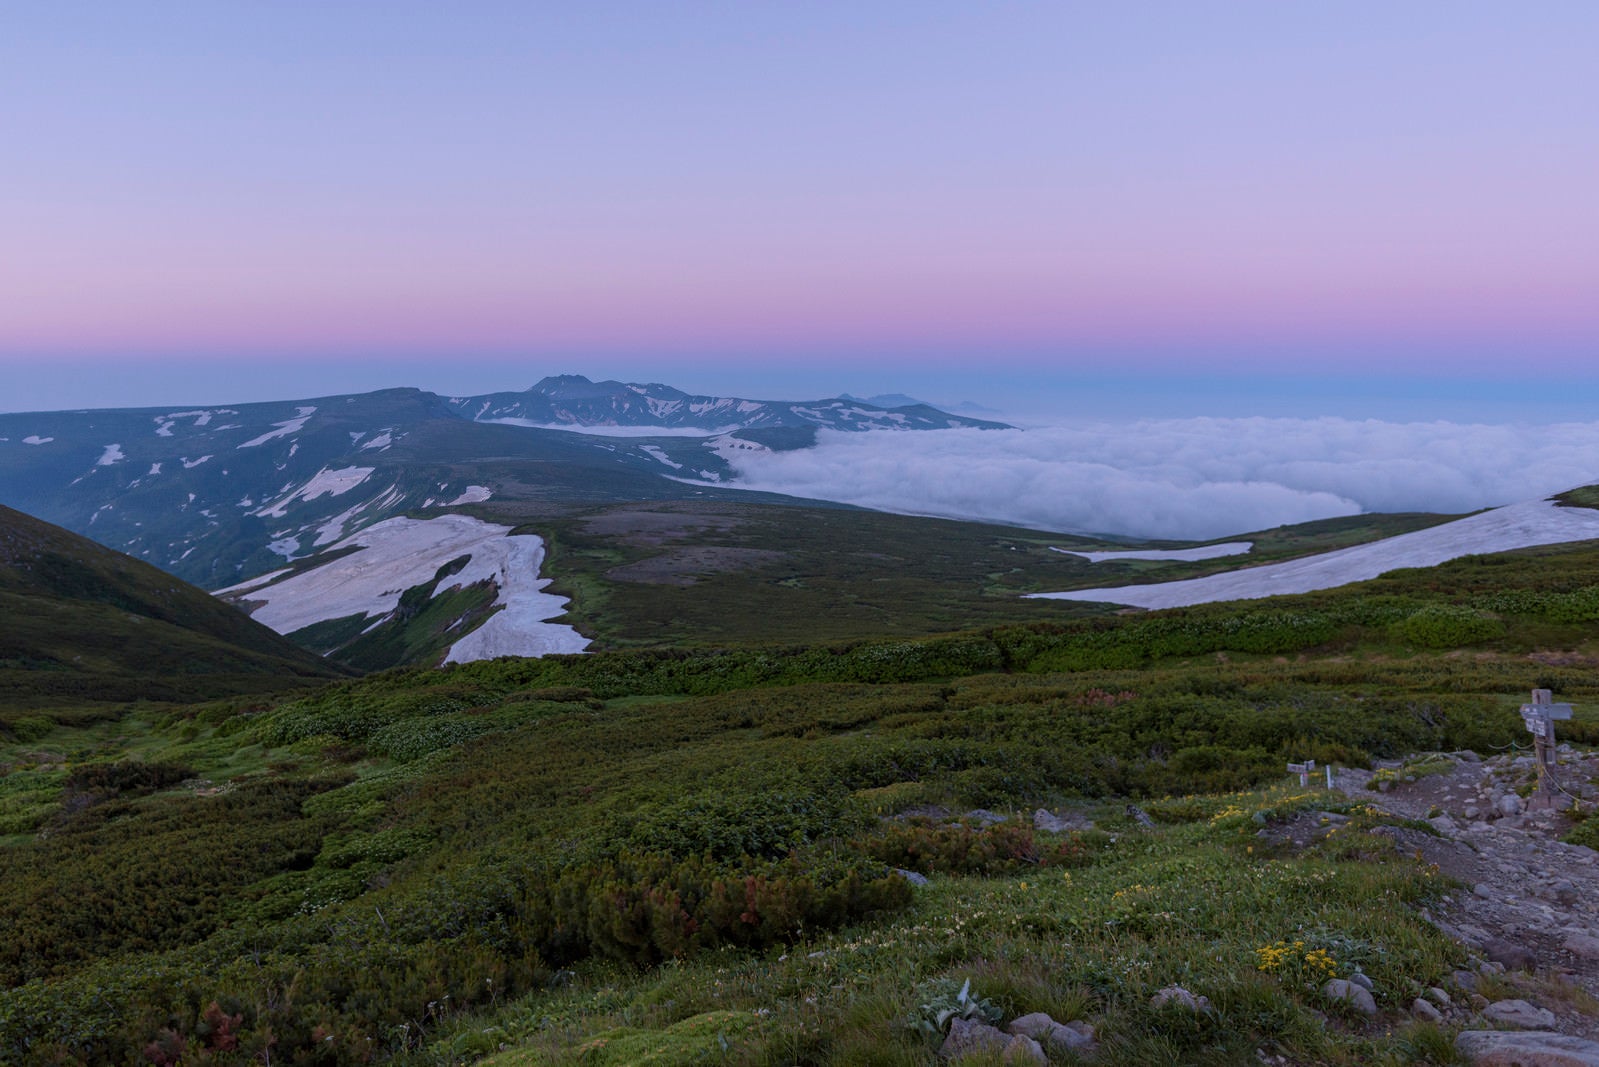 「夜明けを迎える大雪山の稜線」の写真